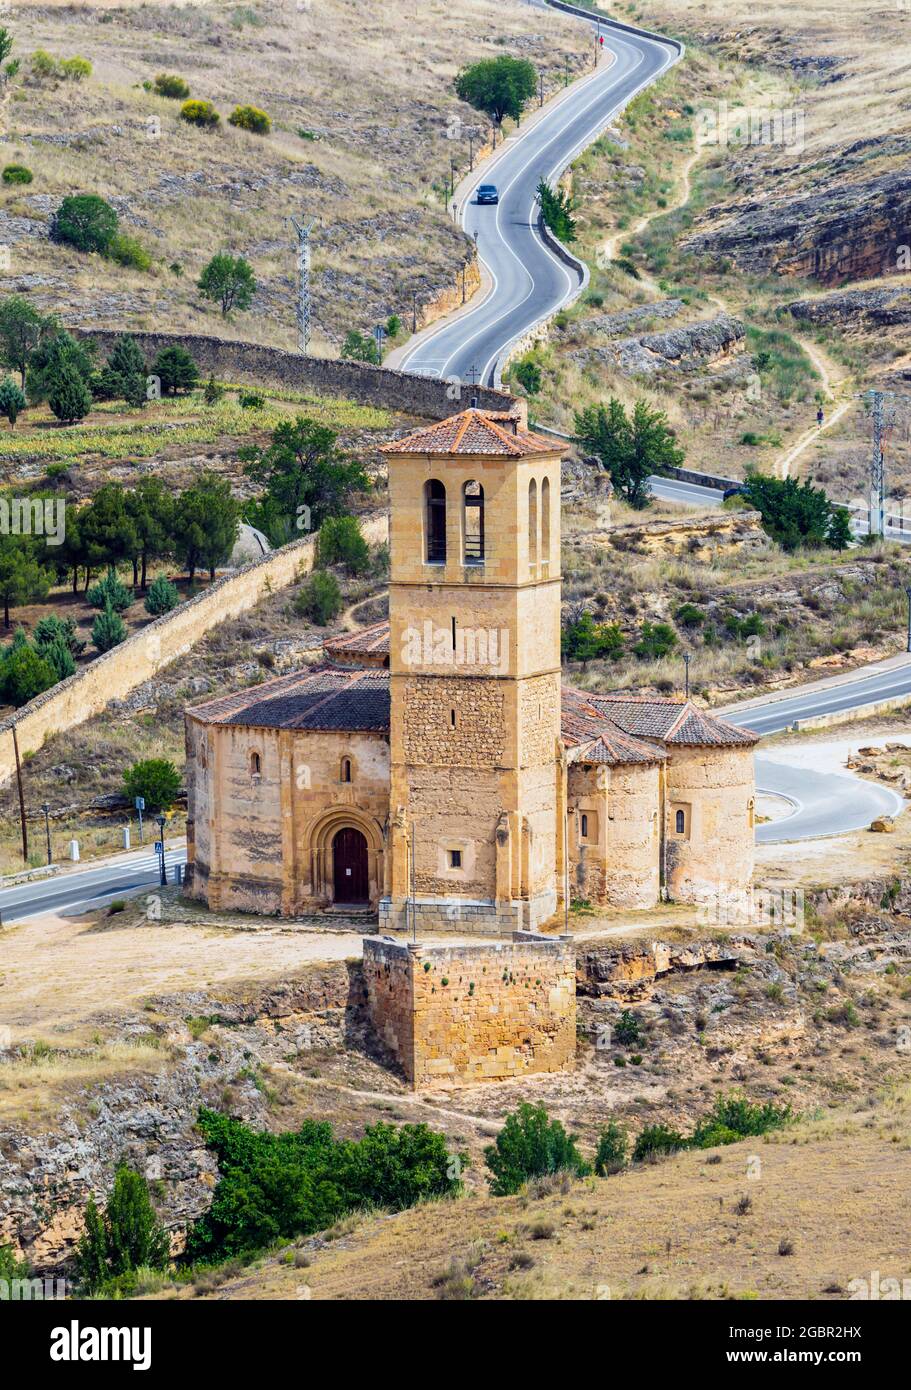 Iglesia de la vera Cruz, o Chiesa della vera Croce, Segovia, Provincia di Segovia, Castiglia e Leon, Spagna. La chiesa risale al 13 ° secolo e. Foto Stock